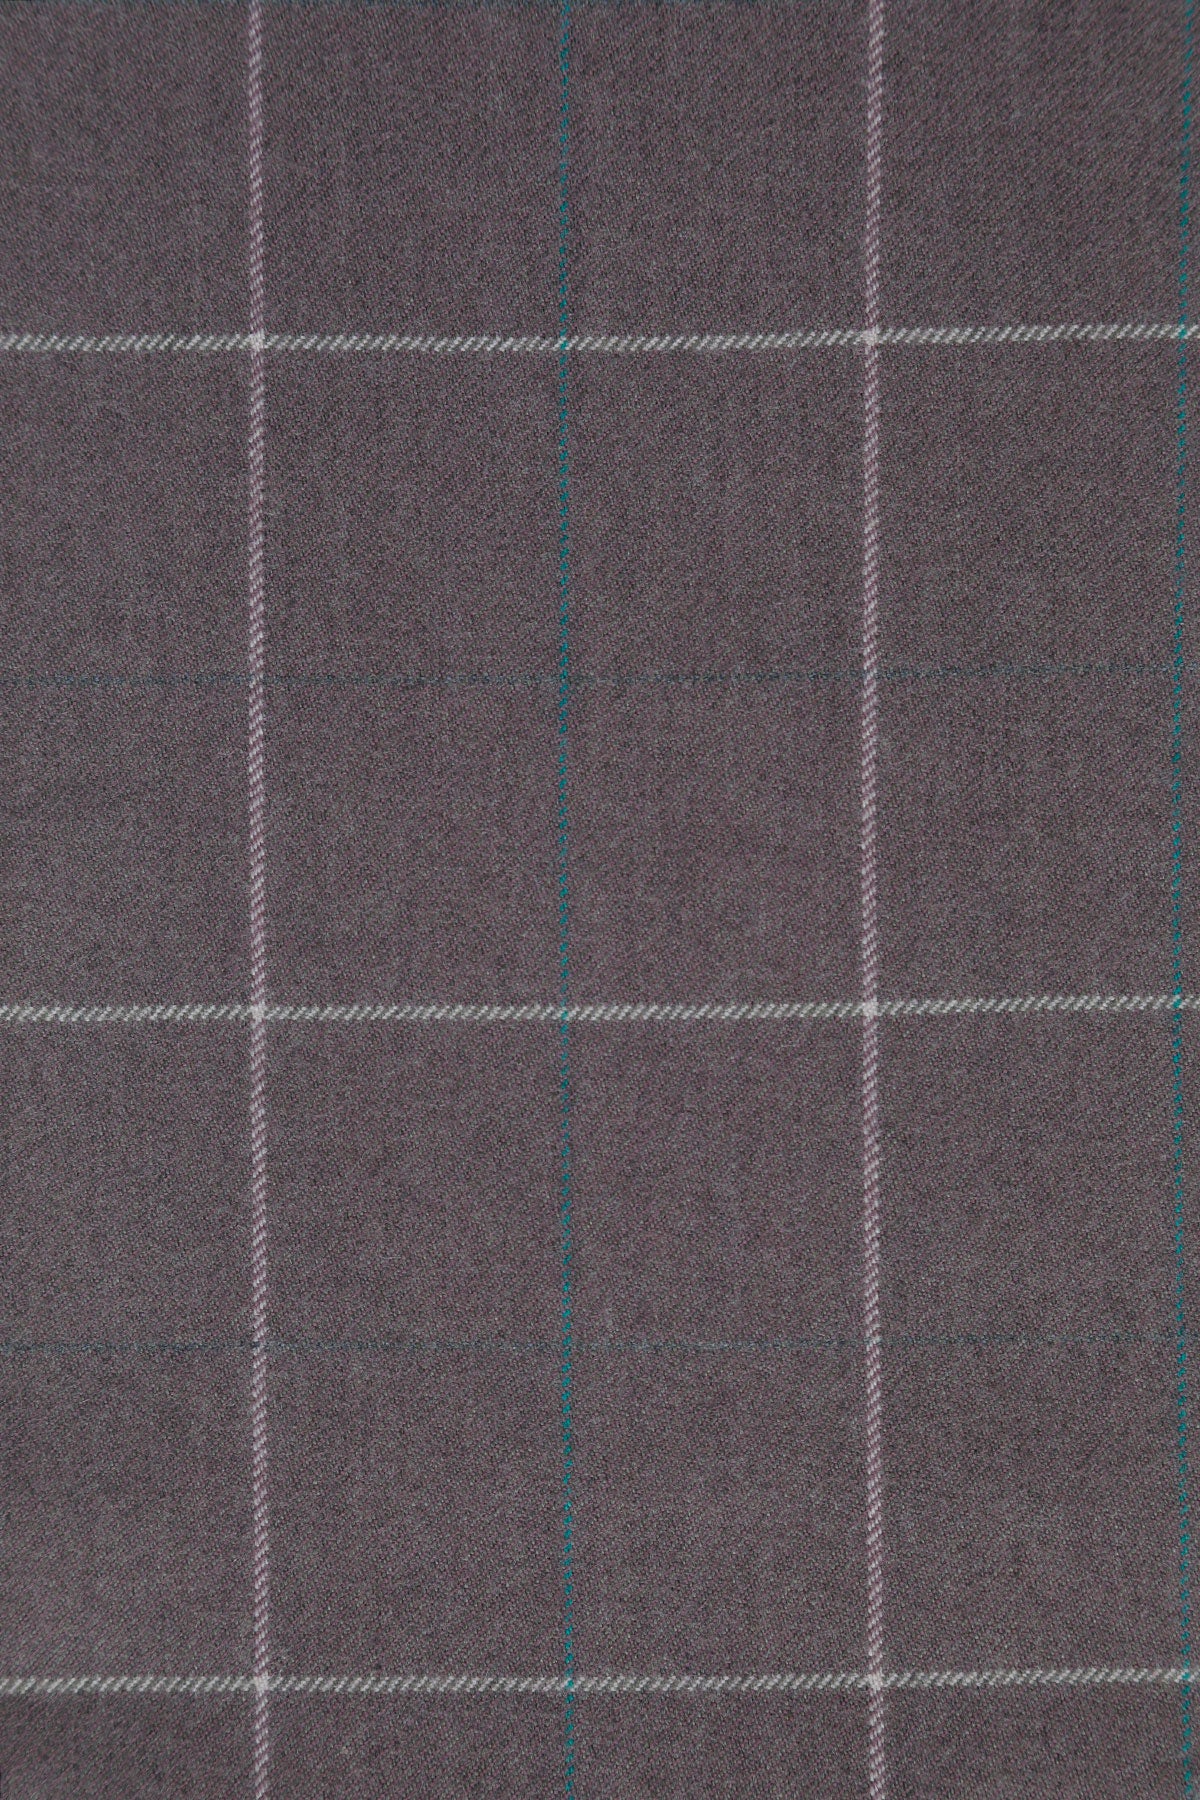 Seren Extra Fine Merino Wool Fabric in Moor 694424173